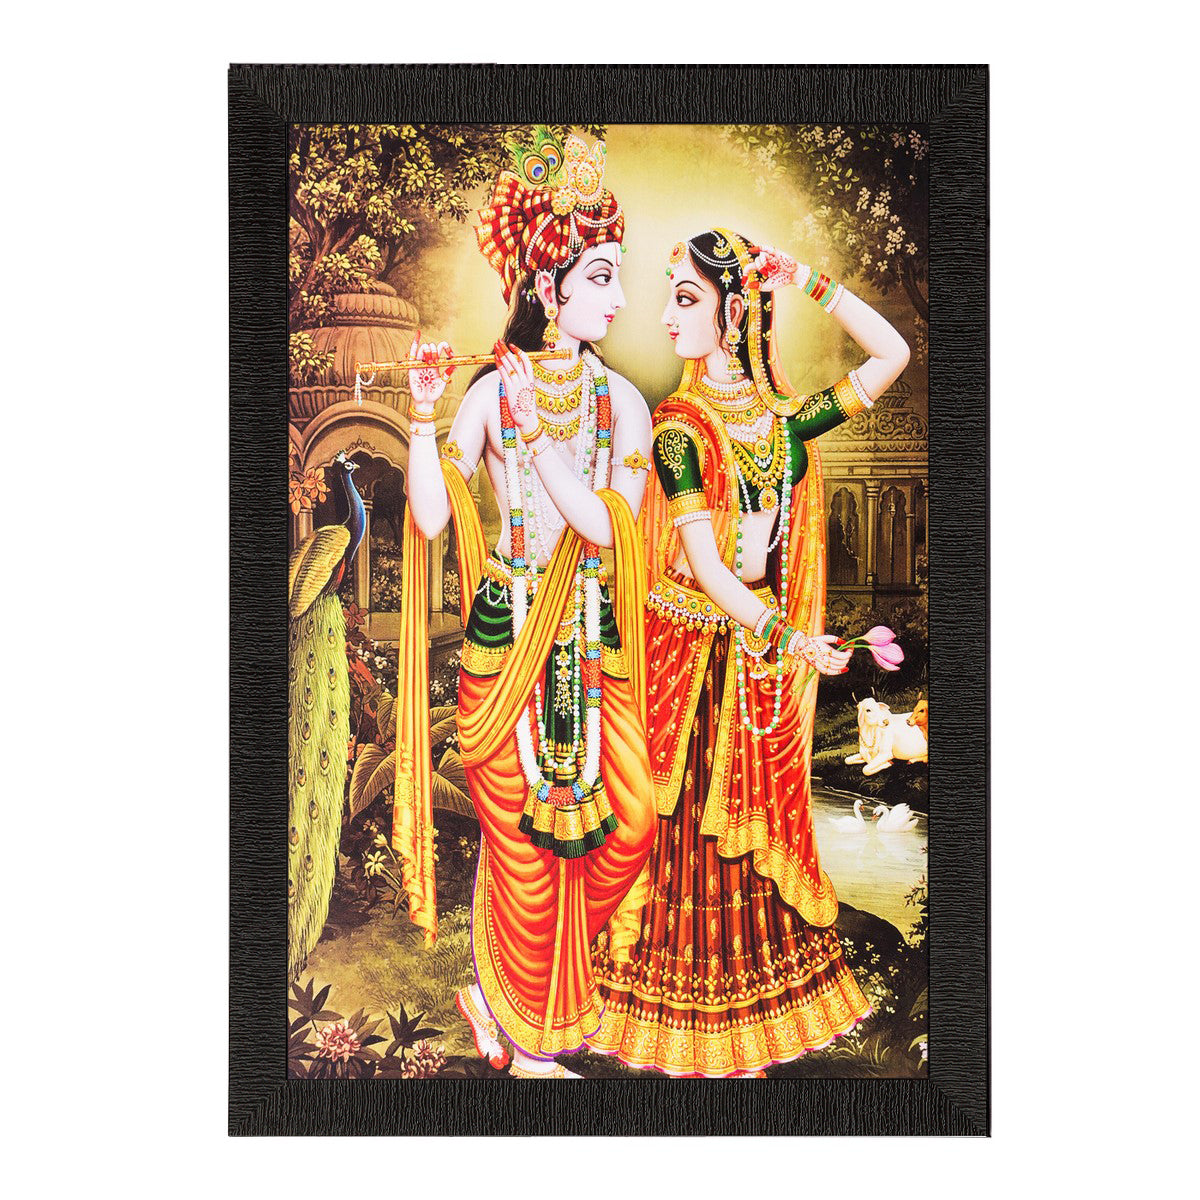 Radha Krishna Romantic Moments Matt Textured UV Art Painting